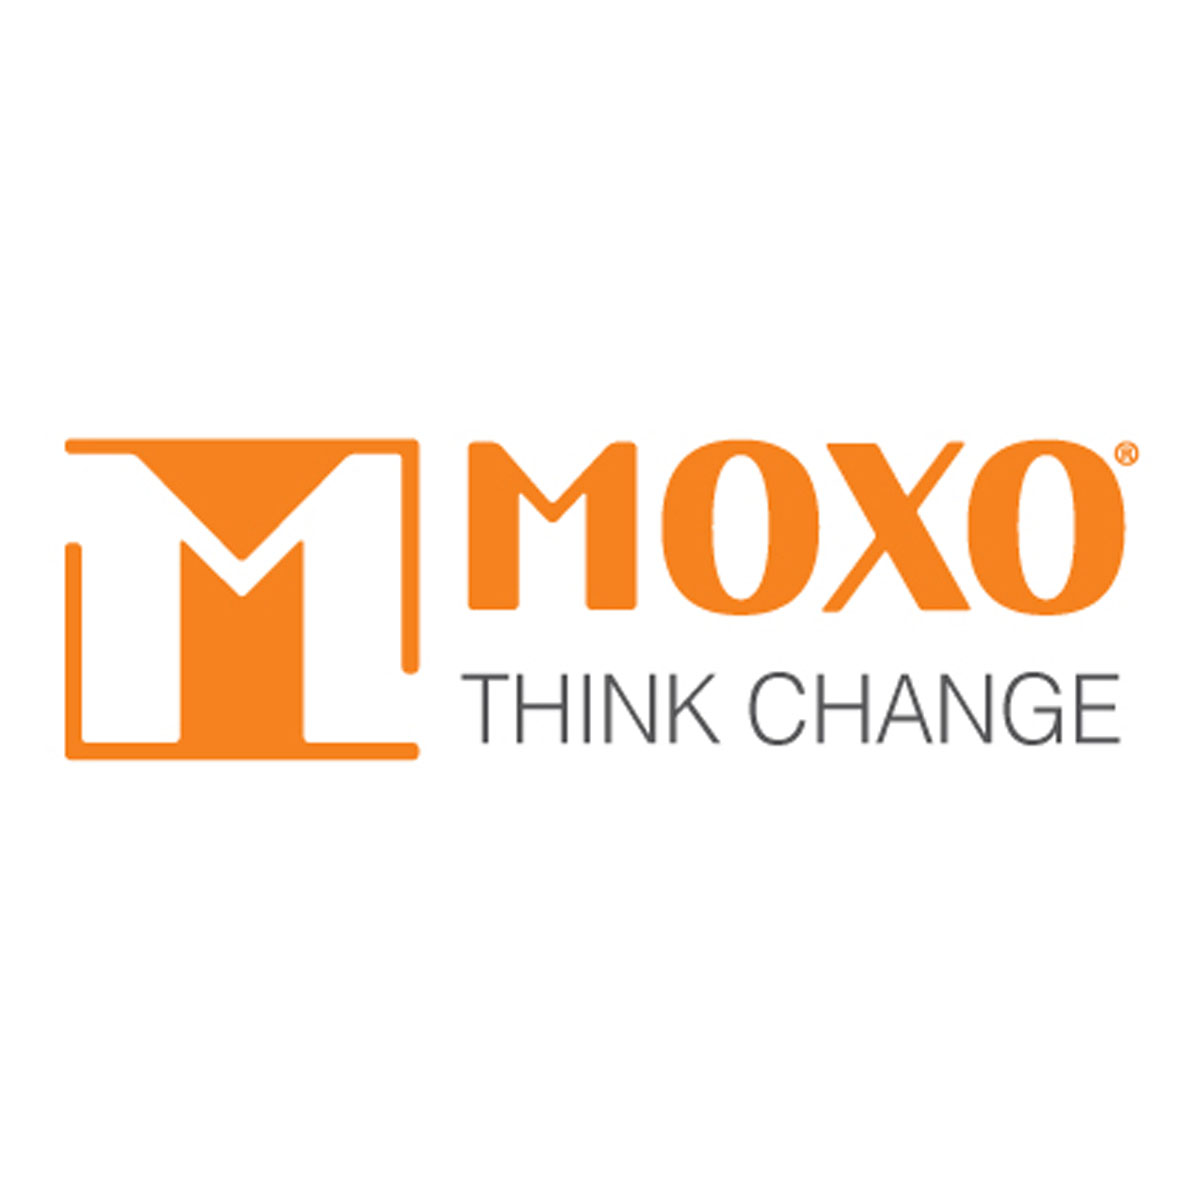 Moxo Think Change